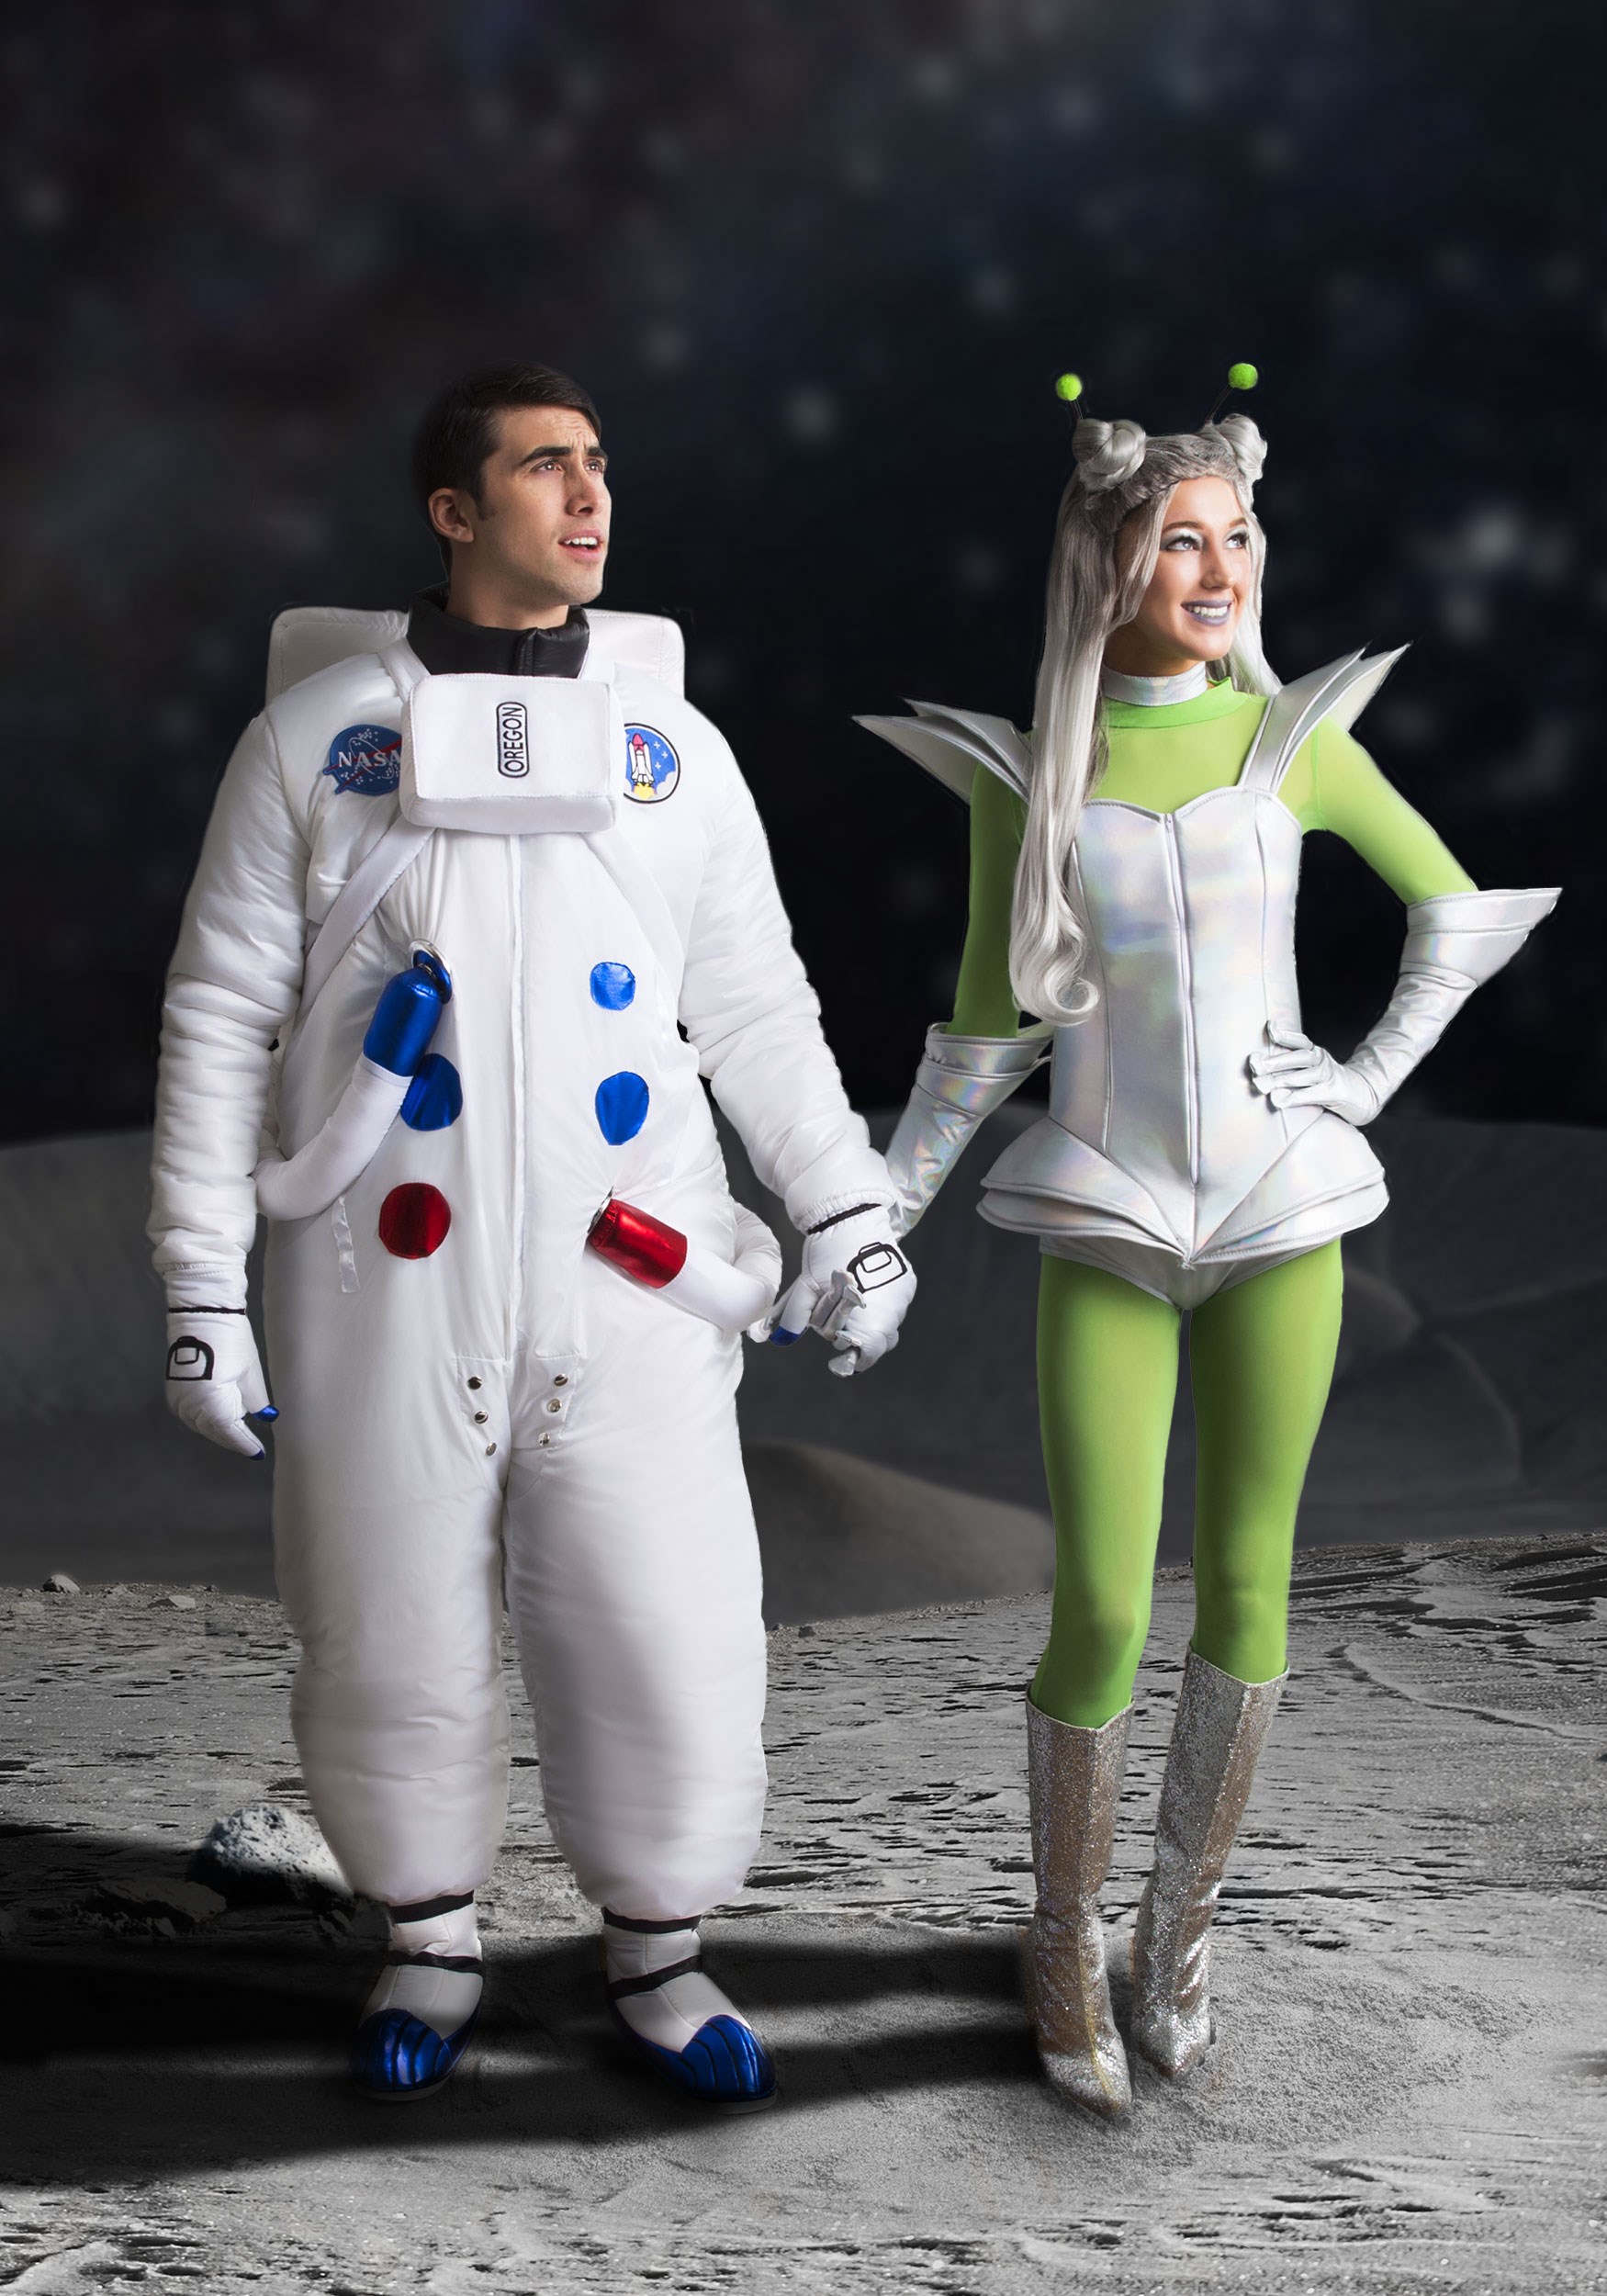 nasa astronauts costume